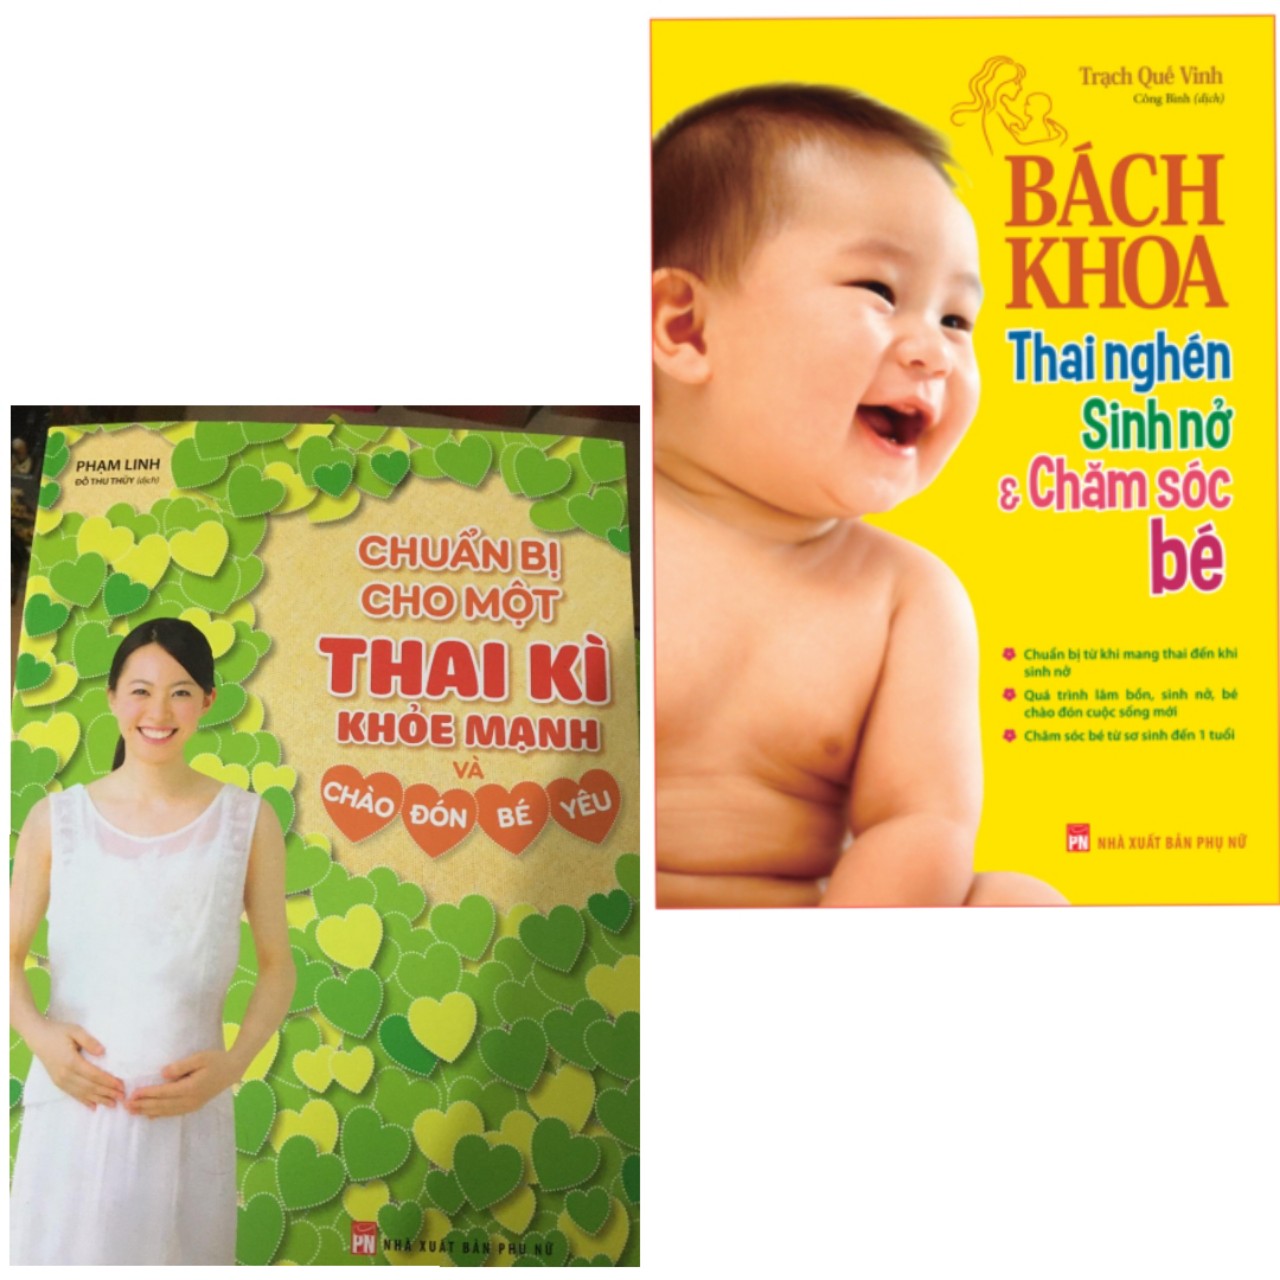 Những Điều Mẹ Bầu Nên Bỏ Túi: Chuẩn Bị Cho Một Thai Kì Khỏe Mạnh Và Chào Đón Bé Yêu + Bách Khoa Thai Nghén - Sinh Nở Và Chăm Sóc Em Bé